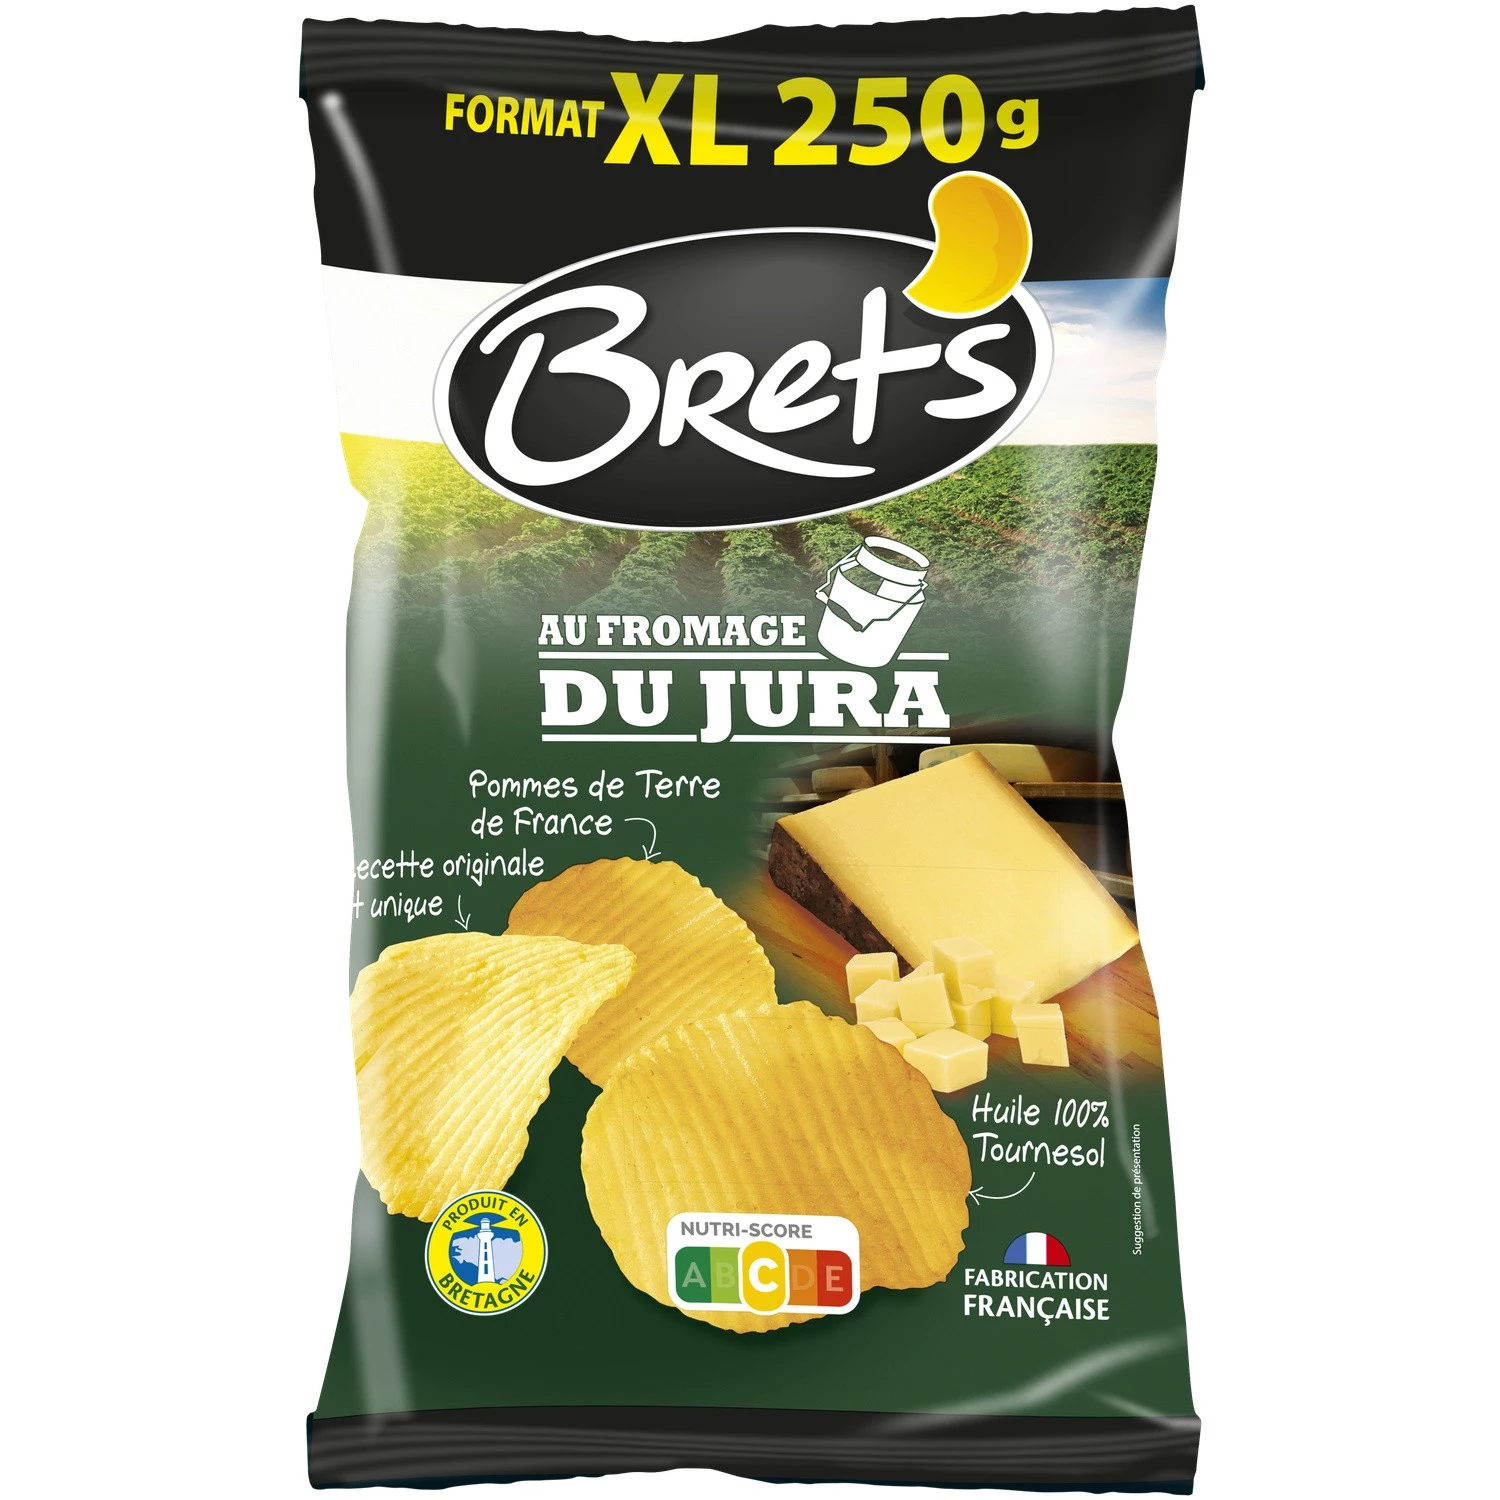 Batatas fritas de queijo Jura, 250g - BRET'S